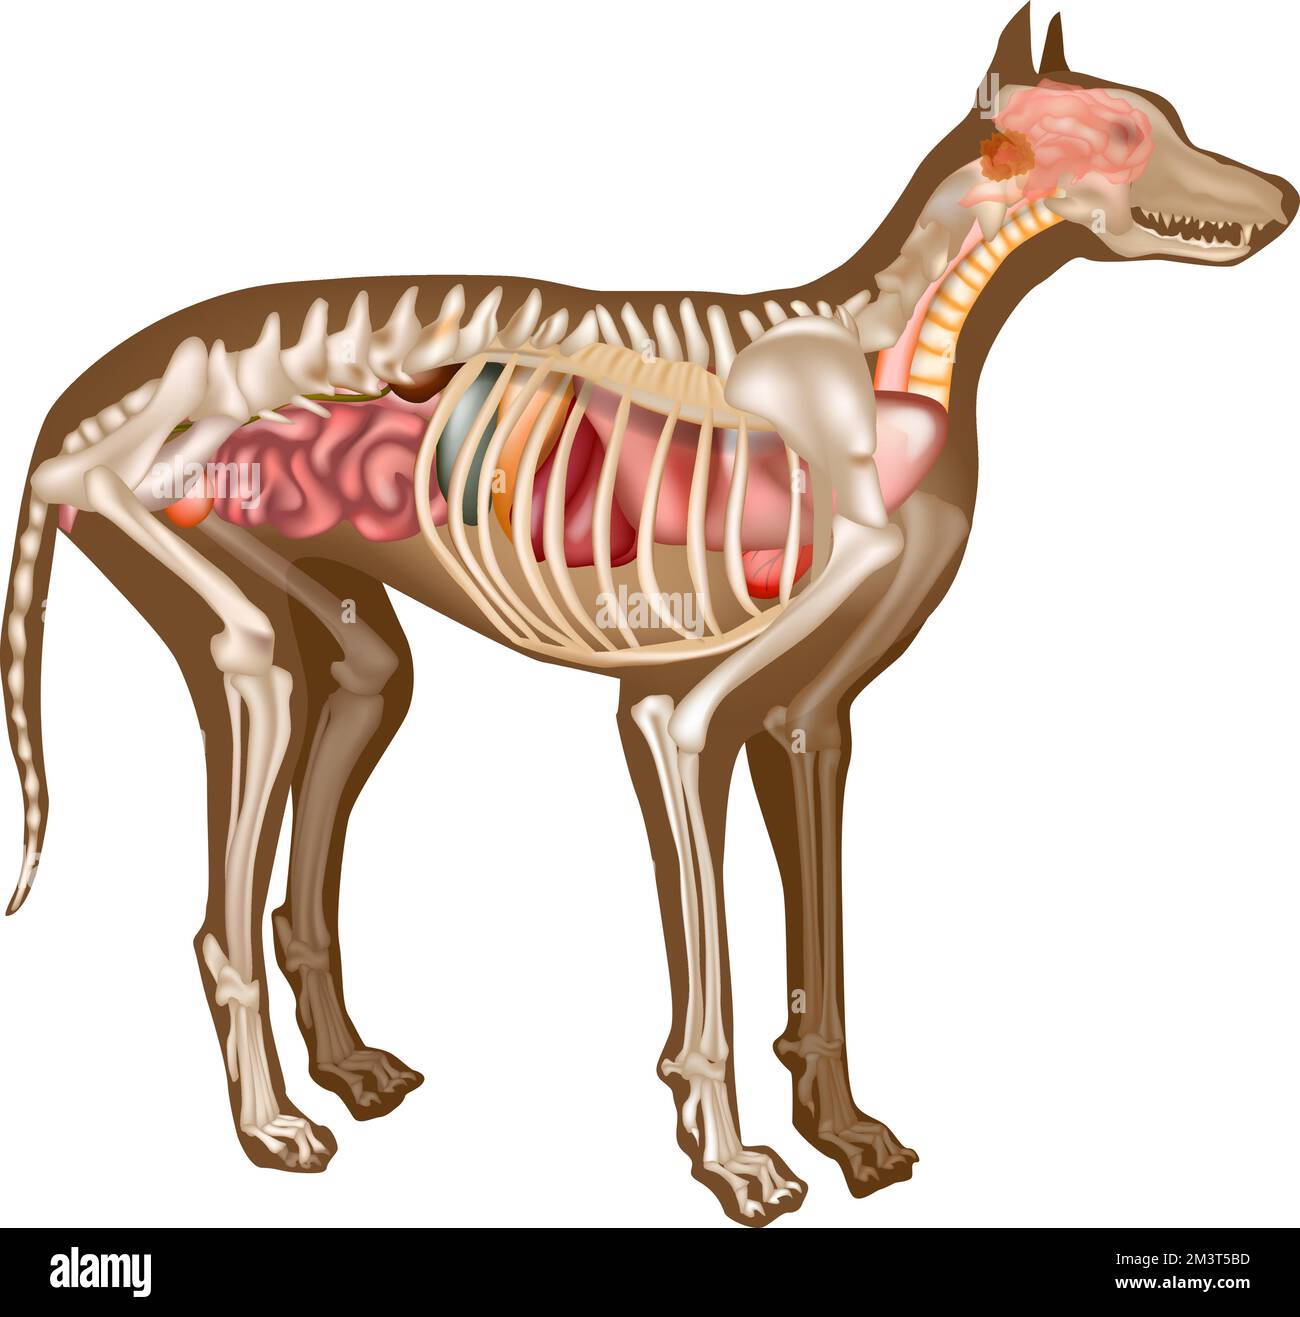 Diagramm Zur Internen Anatomie Des Hundes. Anatomie des Hundes mit Organinnenstrukturuntersuchungsvektordarstellung. Skeletttierarzt des Hundes. Stock Vektor